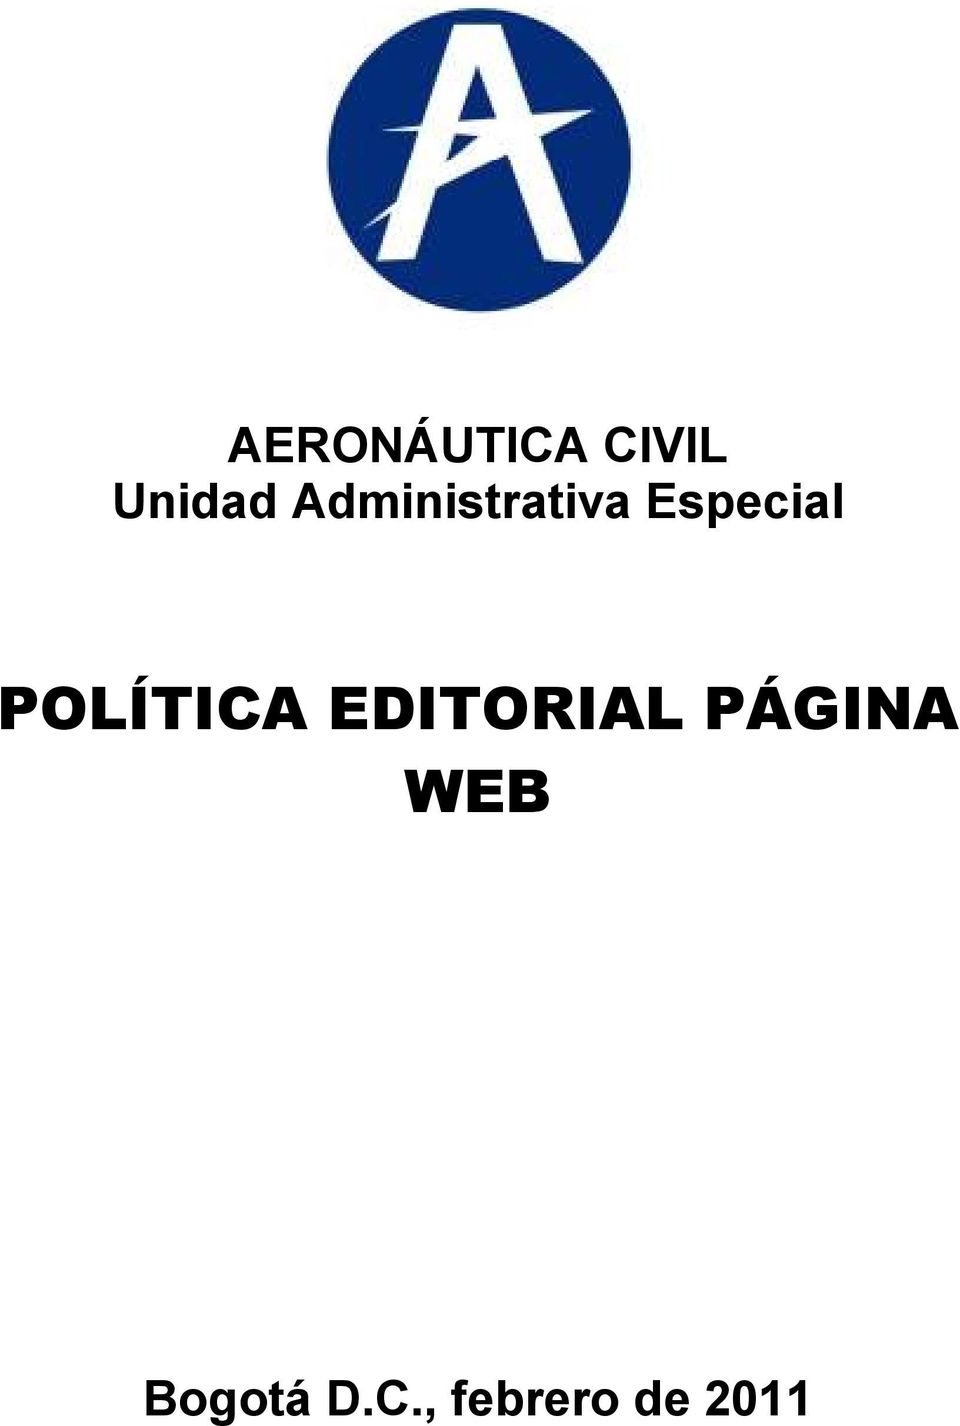 POLÍTICA EDITORIAL PÁGINA